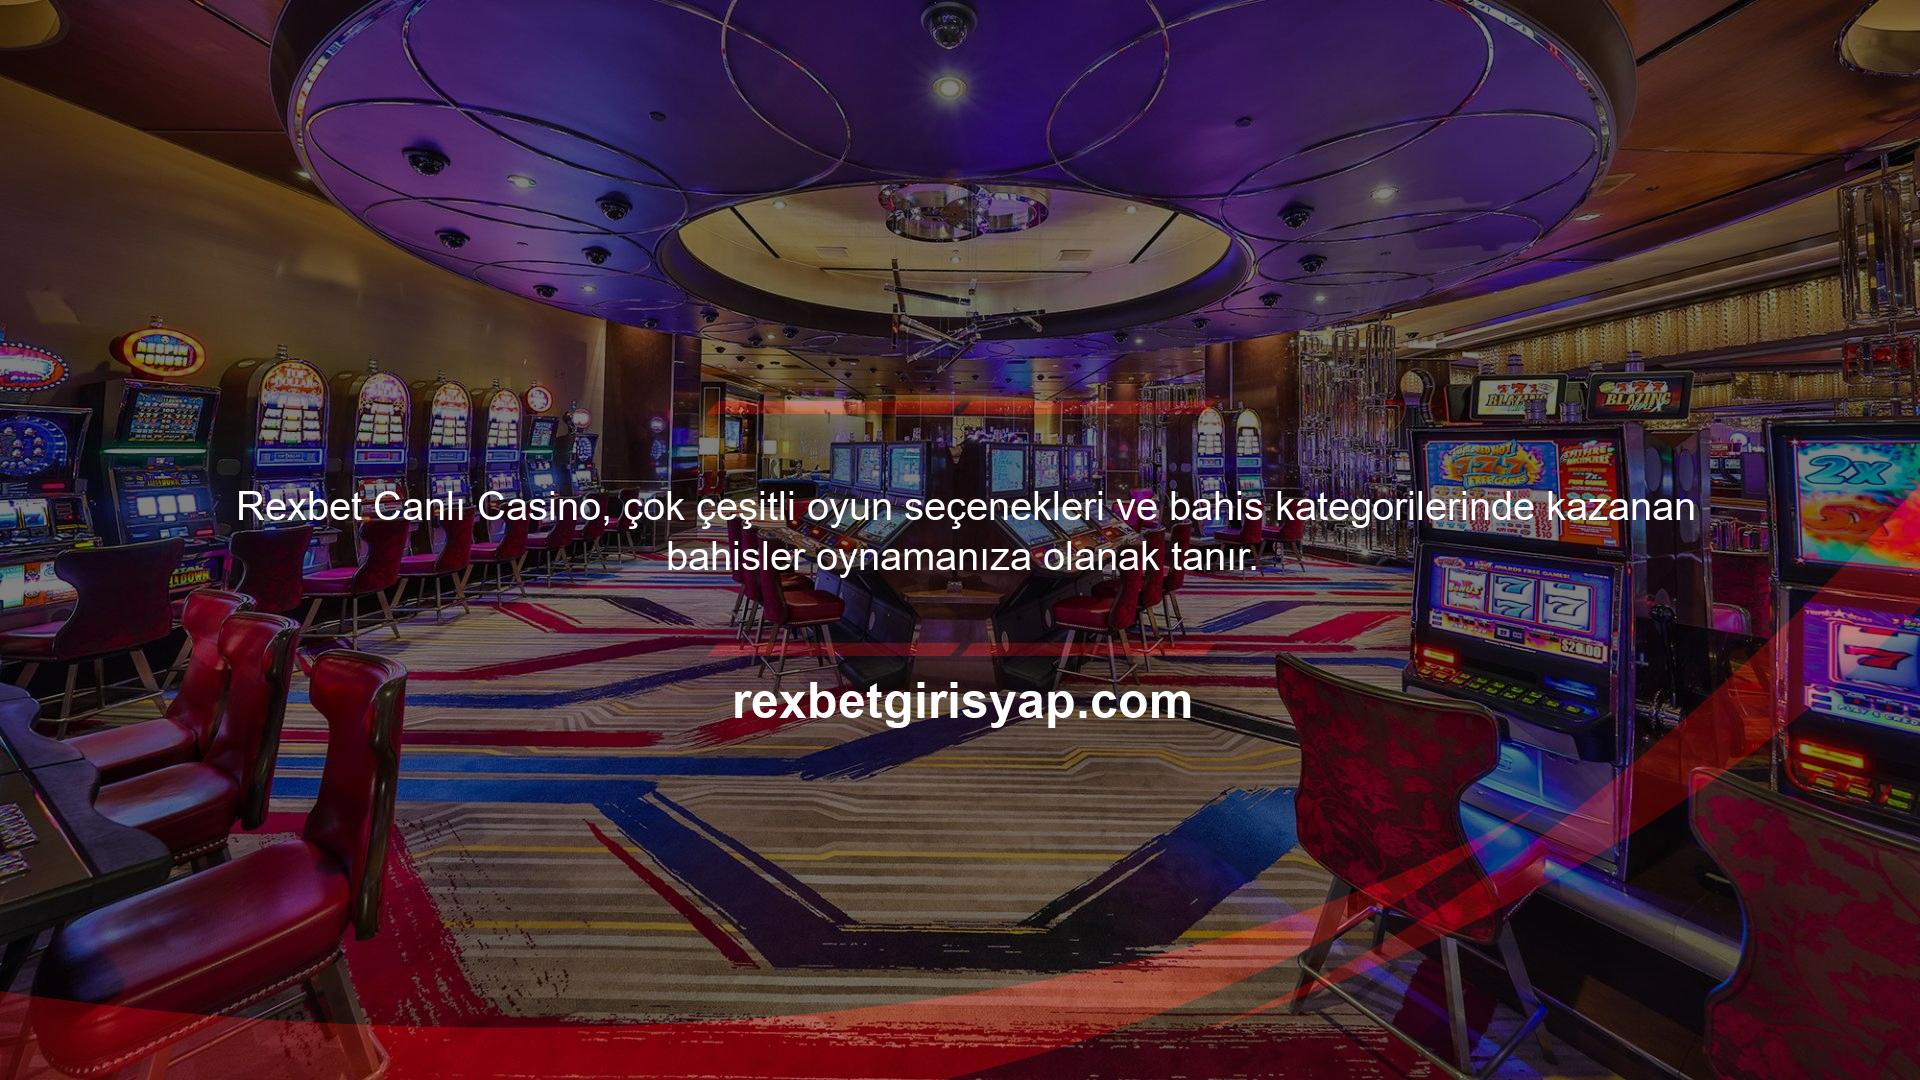 Bahis sitesinin canlı casino oyun hizmetinde şansınızı deneyebileceğiniz çeşitli oyun hizmetleri bulunmaktadır